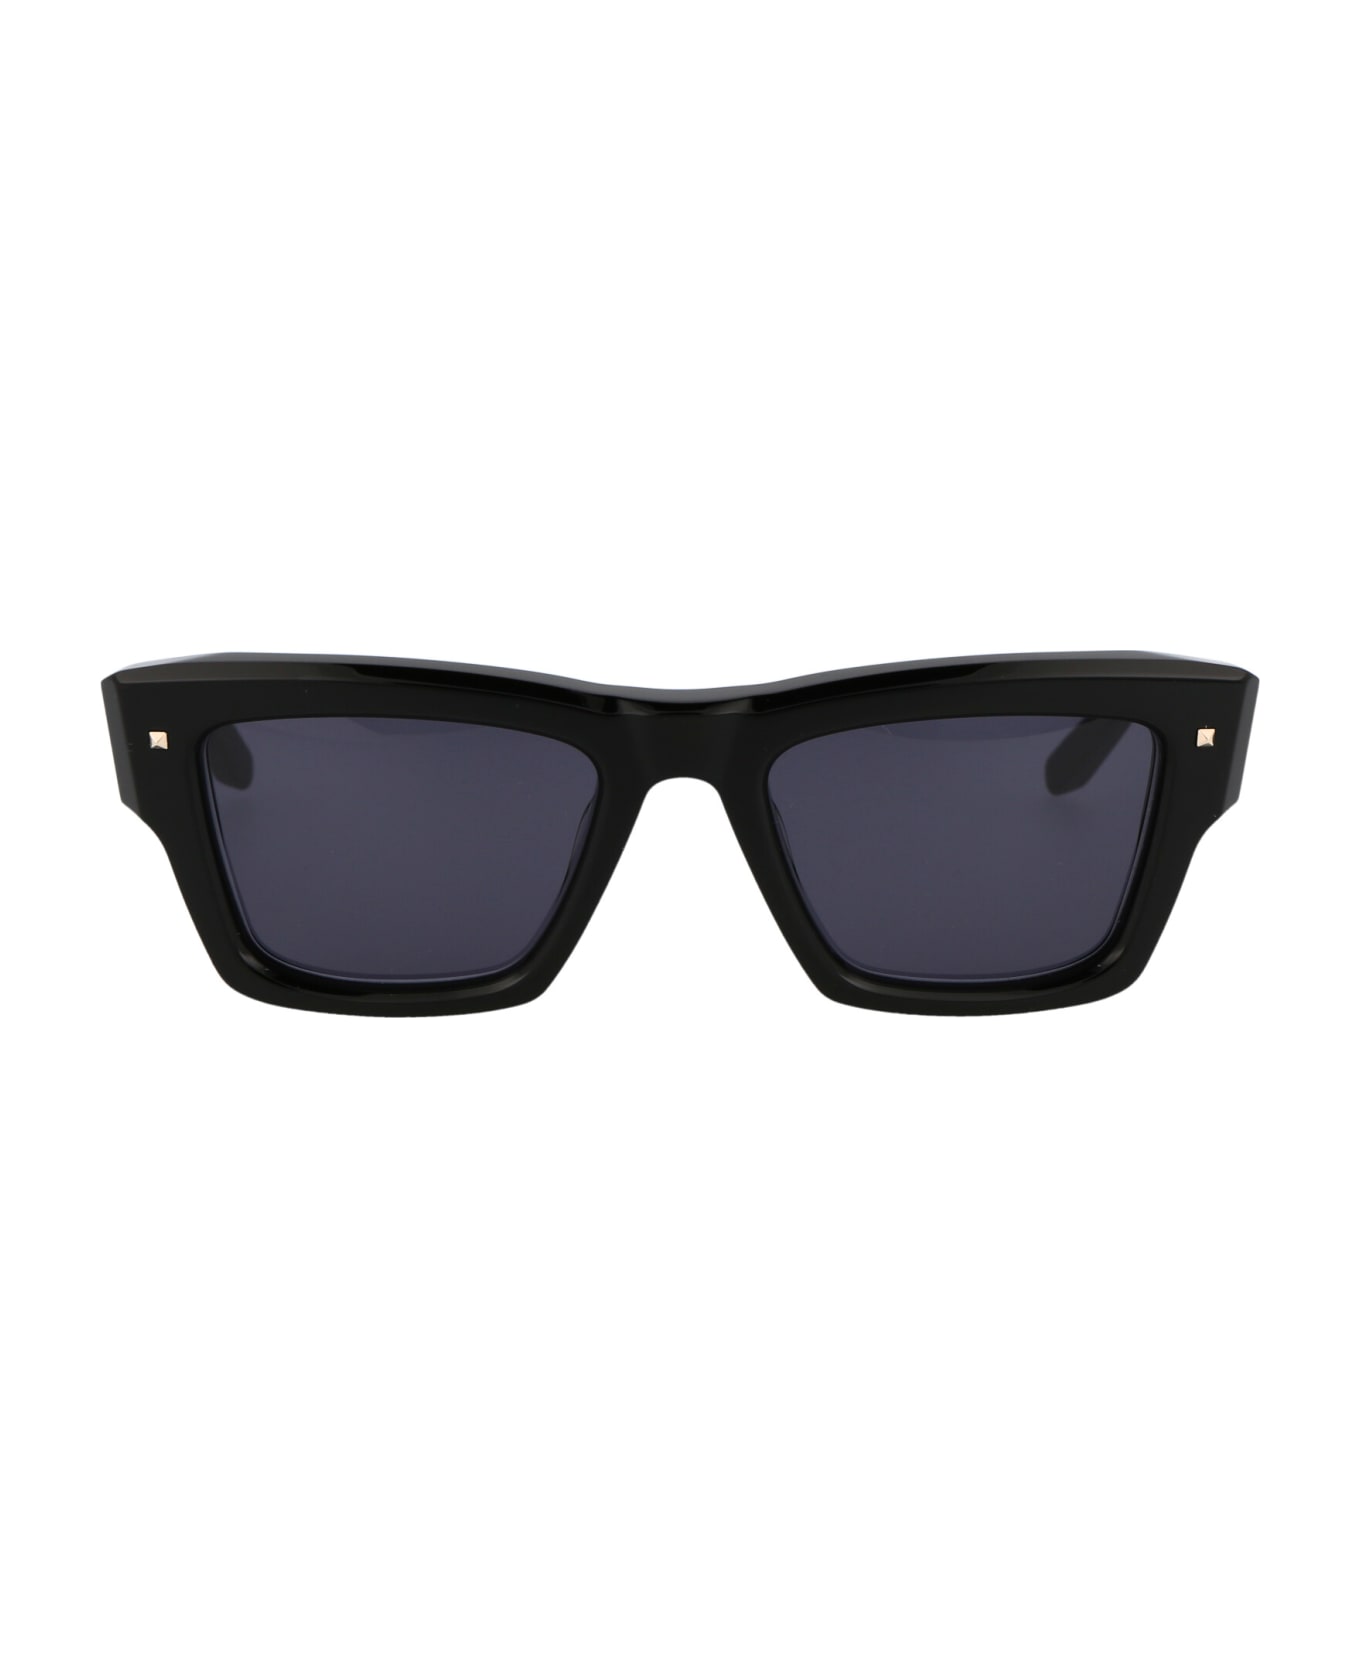 Valentino Eyewear Xxii Sunglasses - Black w/Dark Grey